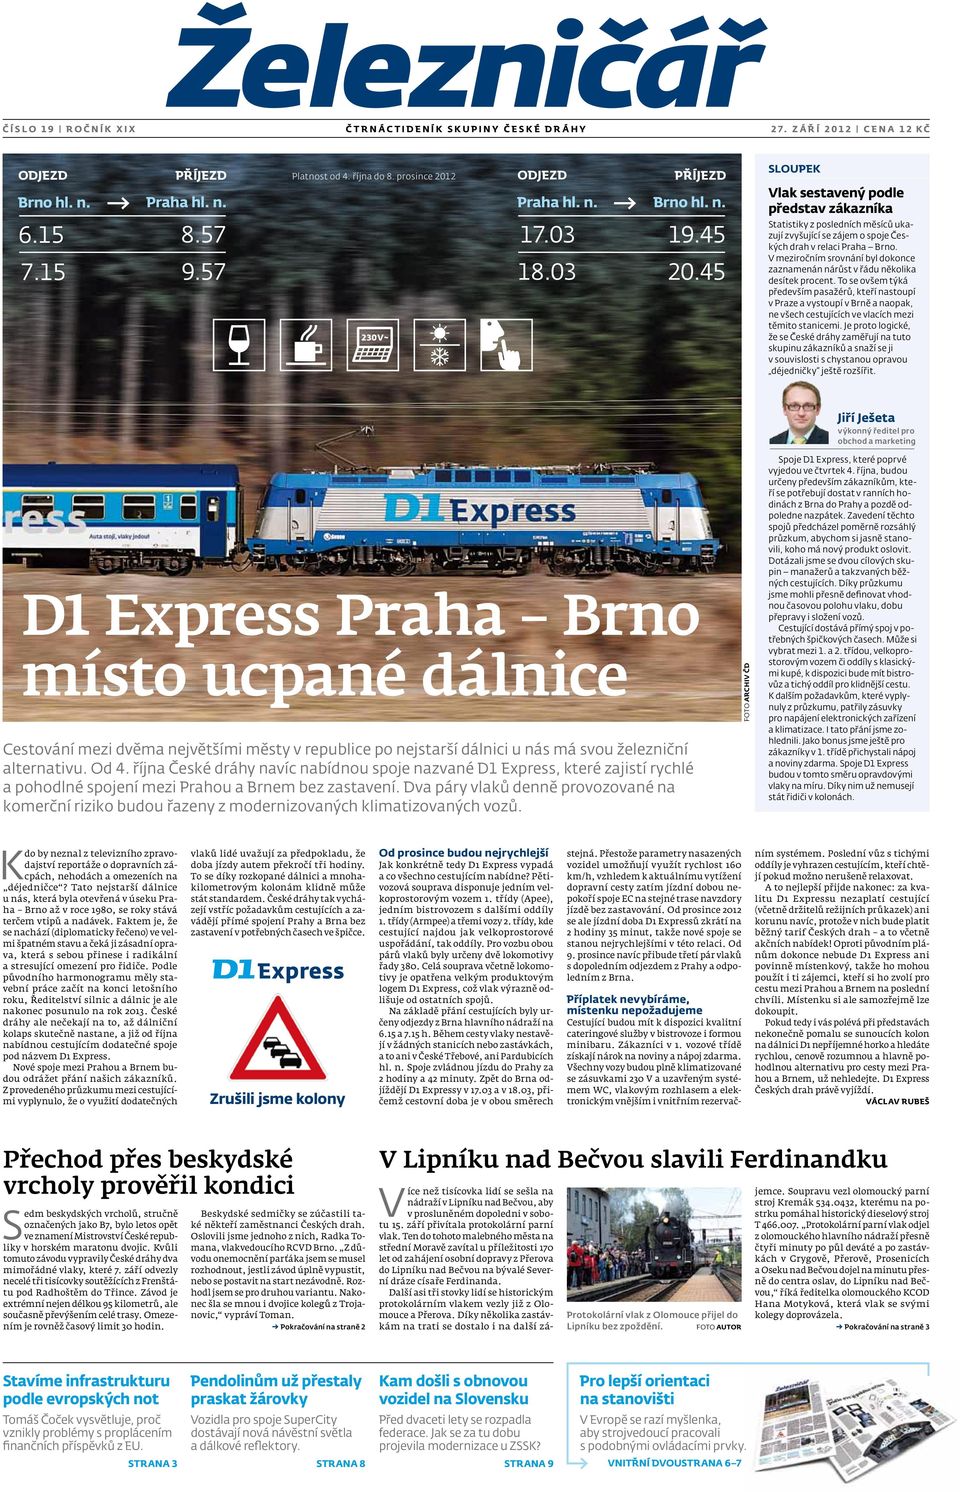 45 sloupek Vlak sestavený podle představ zákazníka Statistiky z posledních měsíců ukazují zvyšující se zájem o spoje Českých drah v relaci Praha Brno.